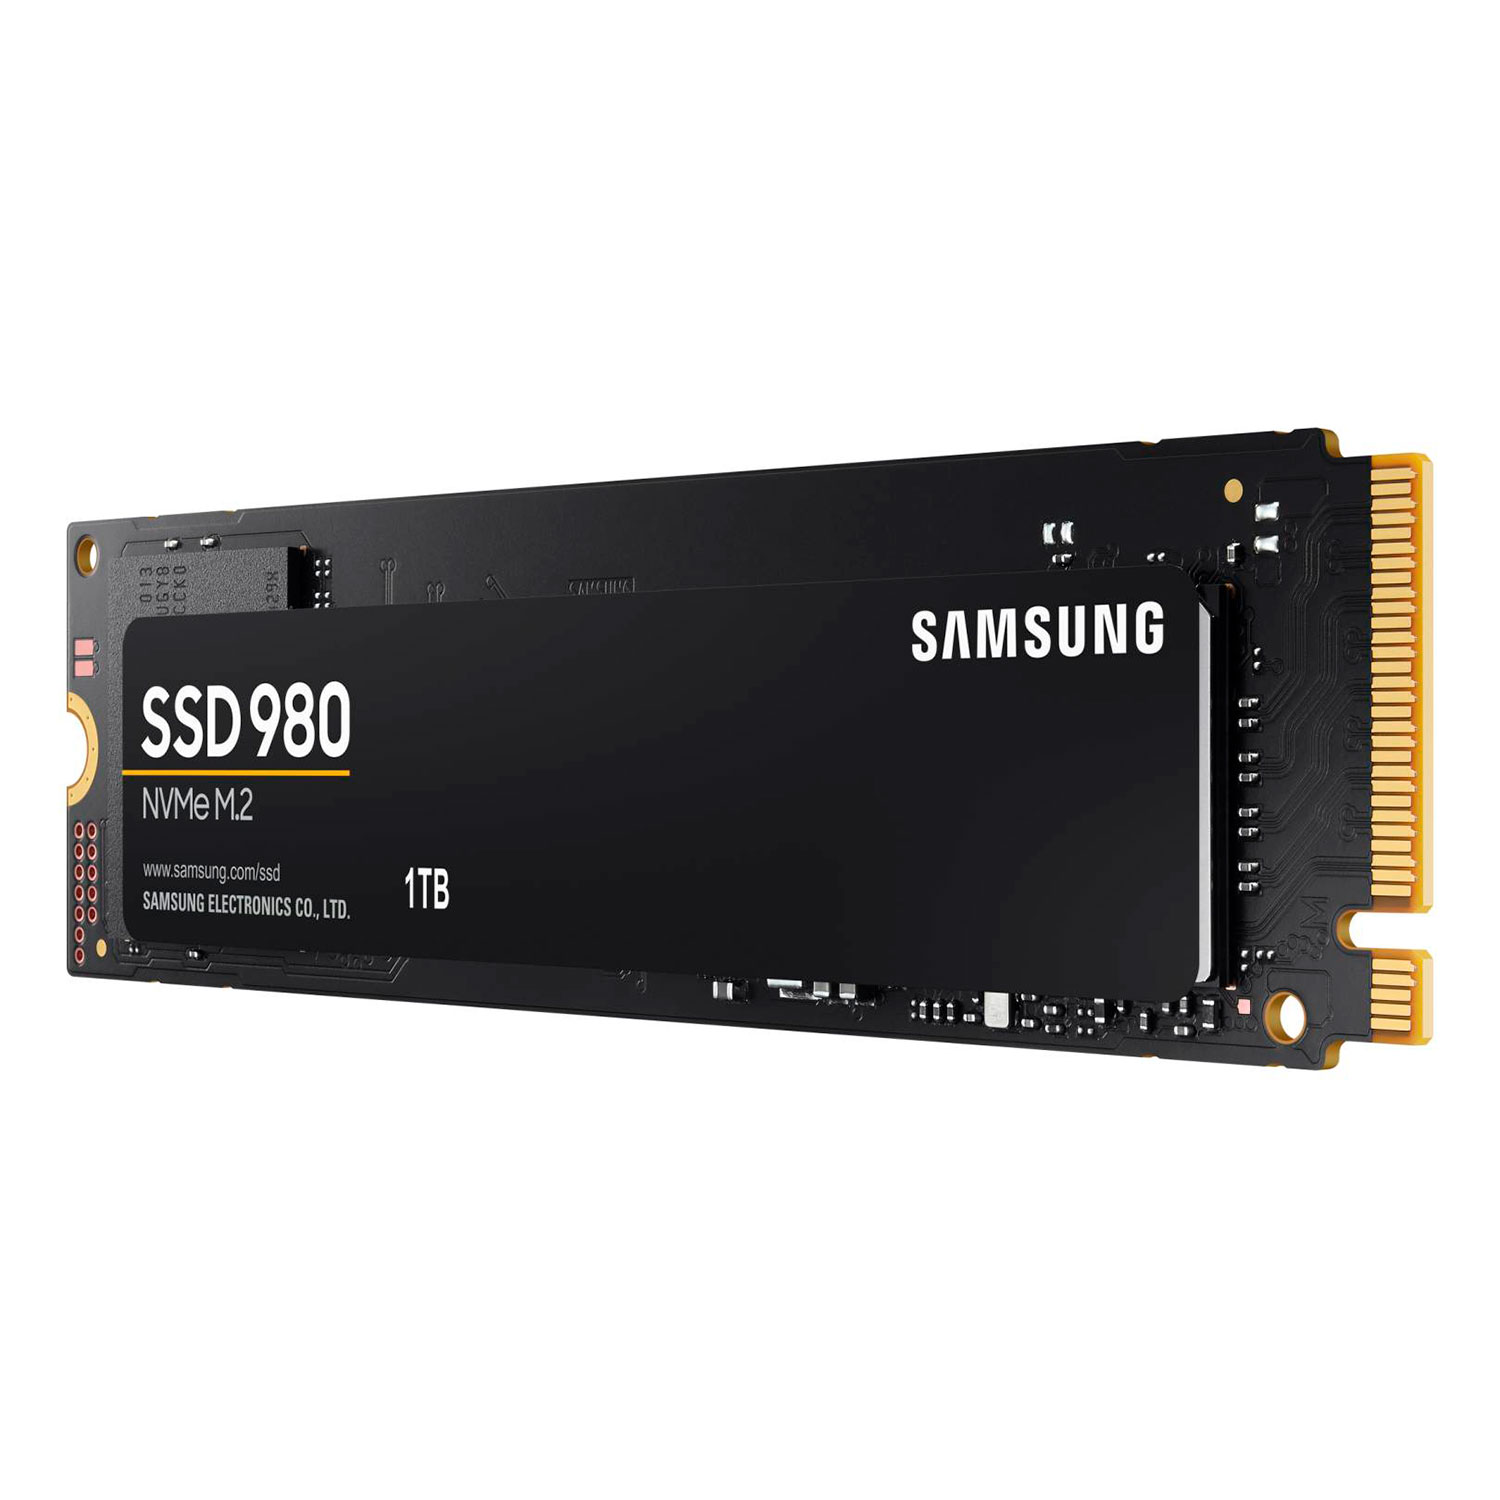 SSD M.2 Samsung 980 1TB NVMe PCIe 3.0 - MZ-V8V1T0B/AM
